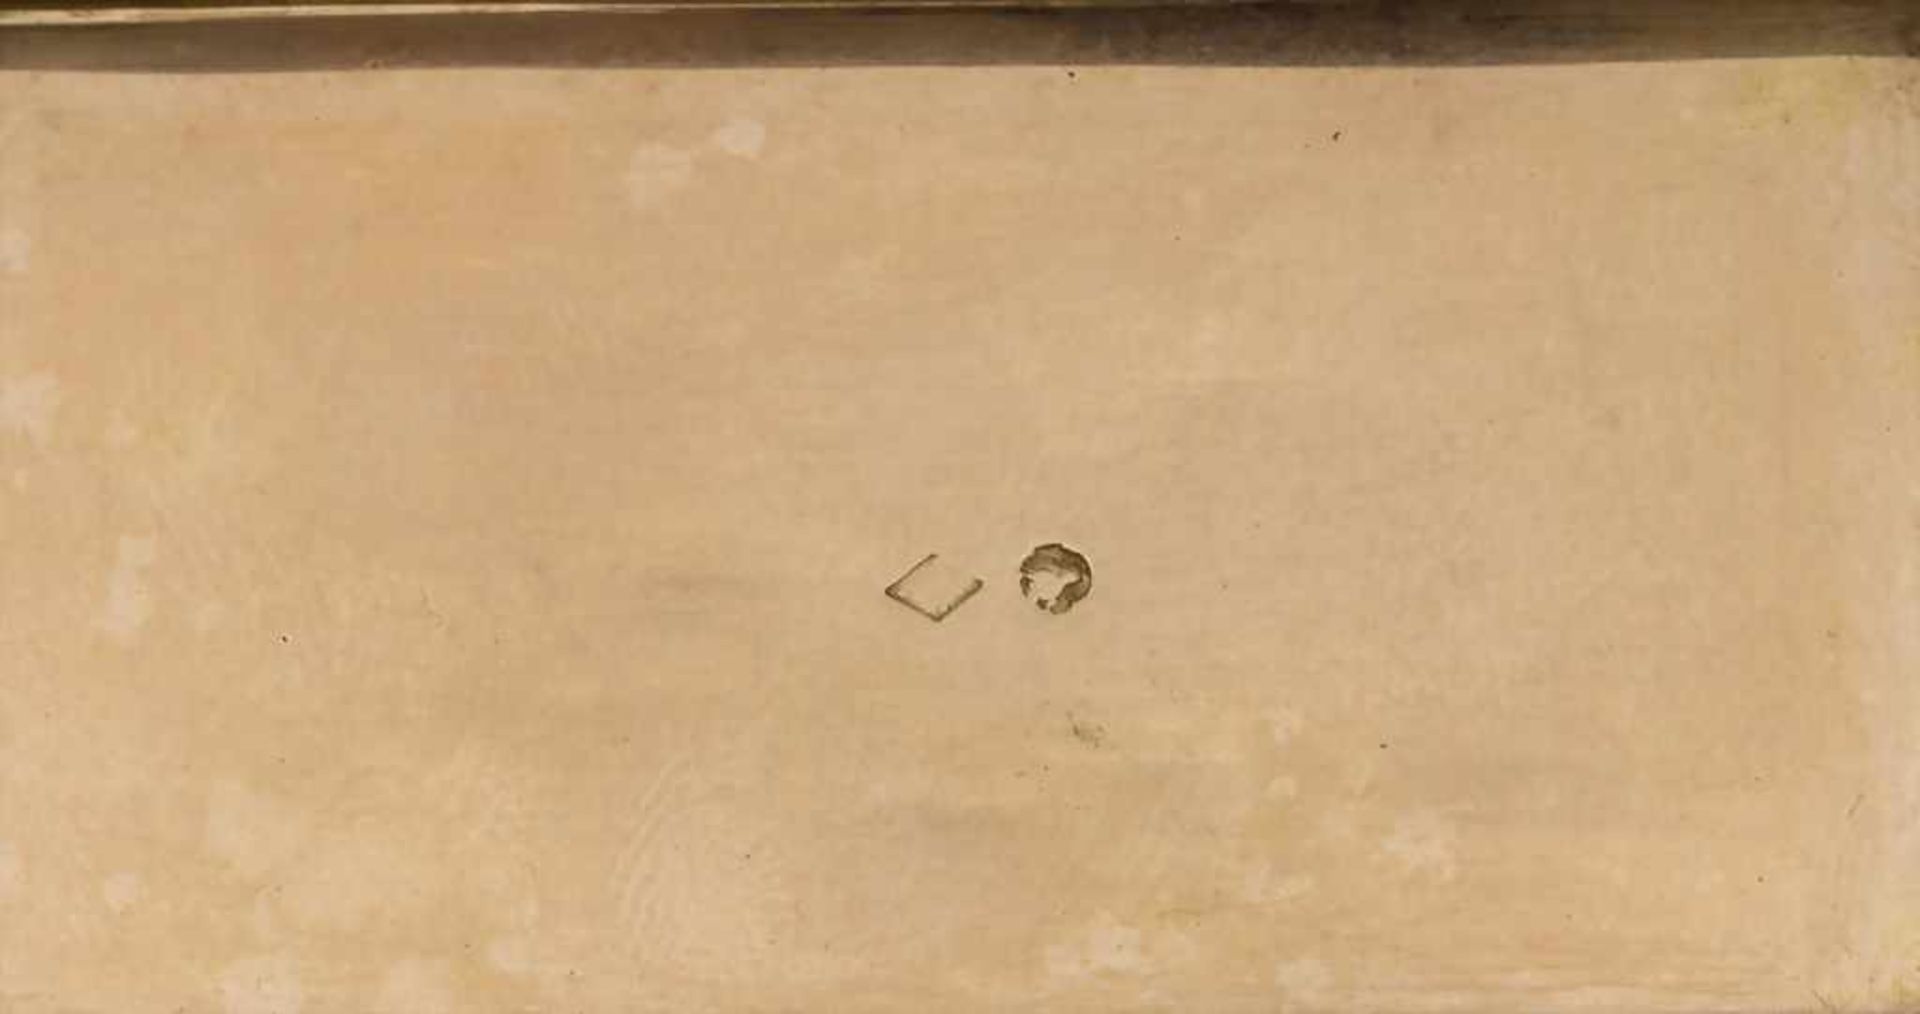 Tabatiere / A tobacco tin, Paris, 1819-1839Material: GG 18 Kt 750/000, Beschaumarken, Goldmarke, - Bild 3 aus 3